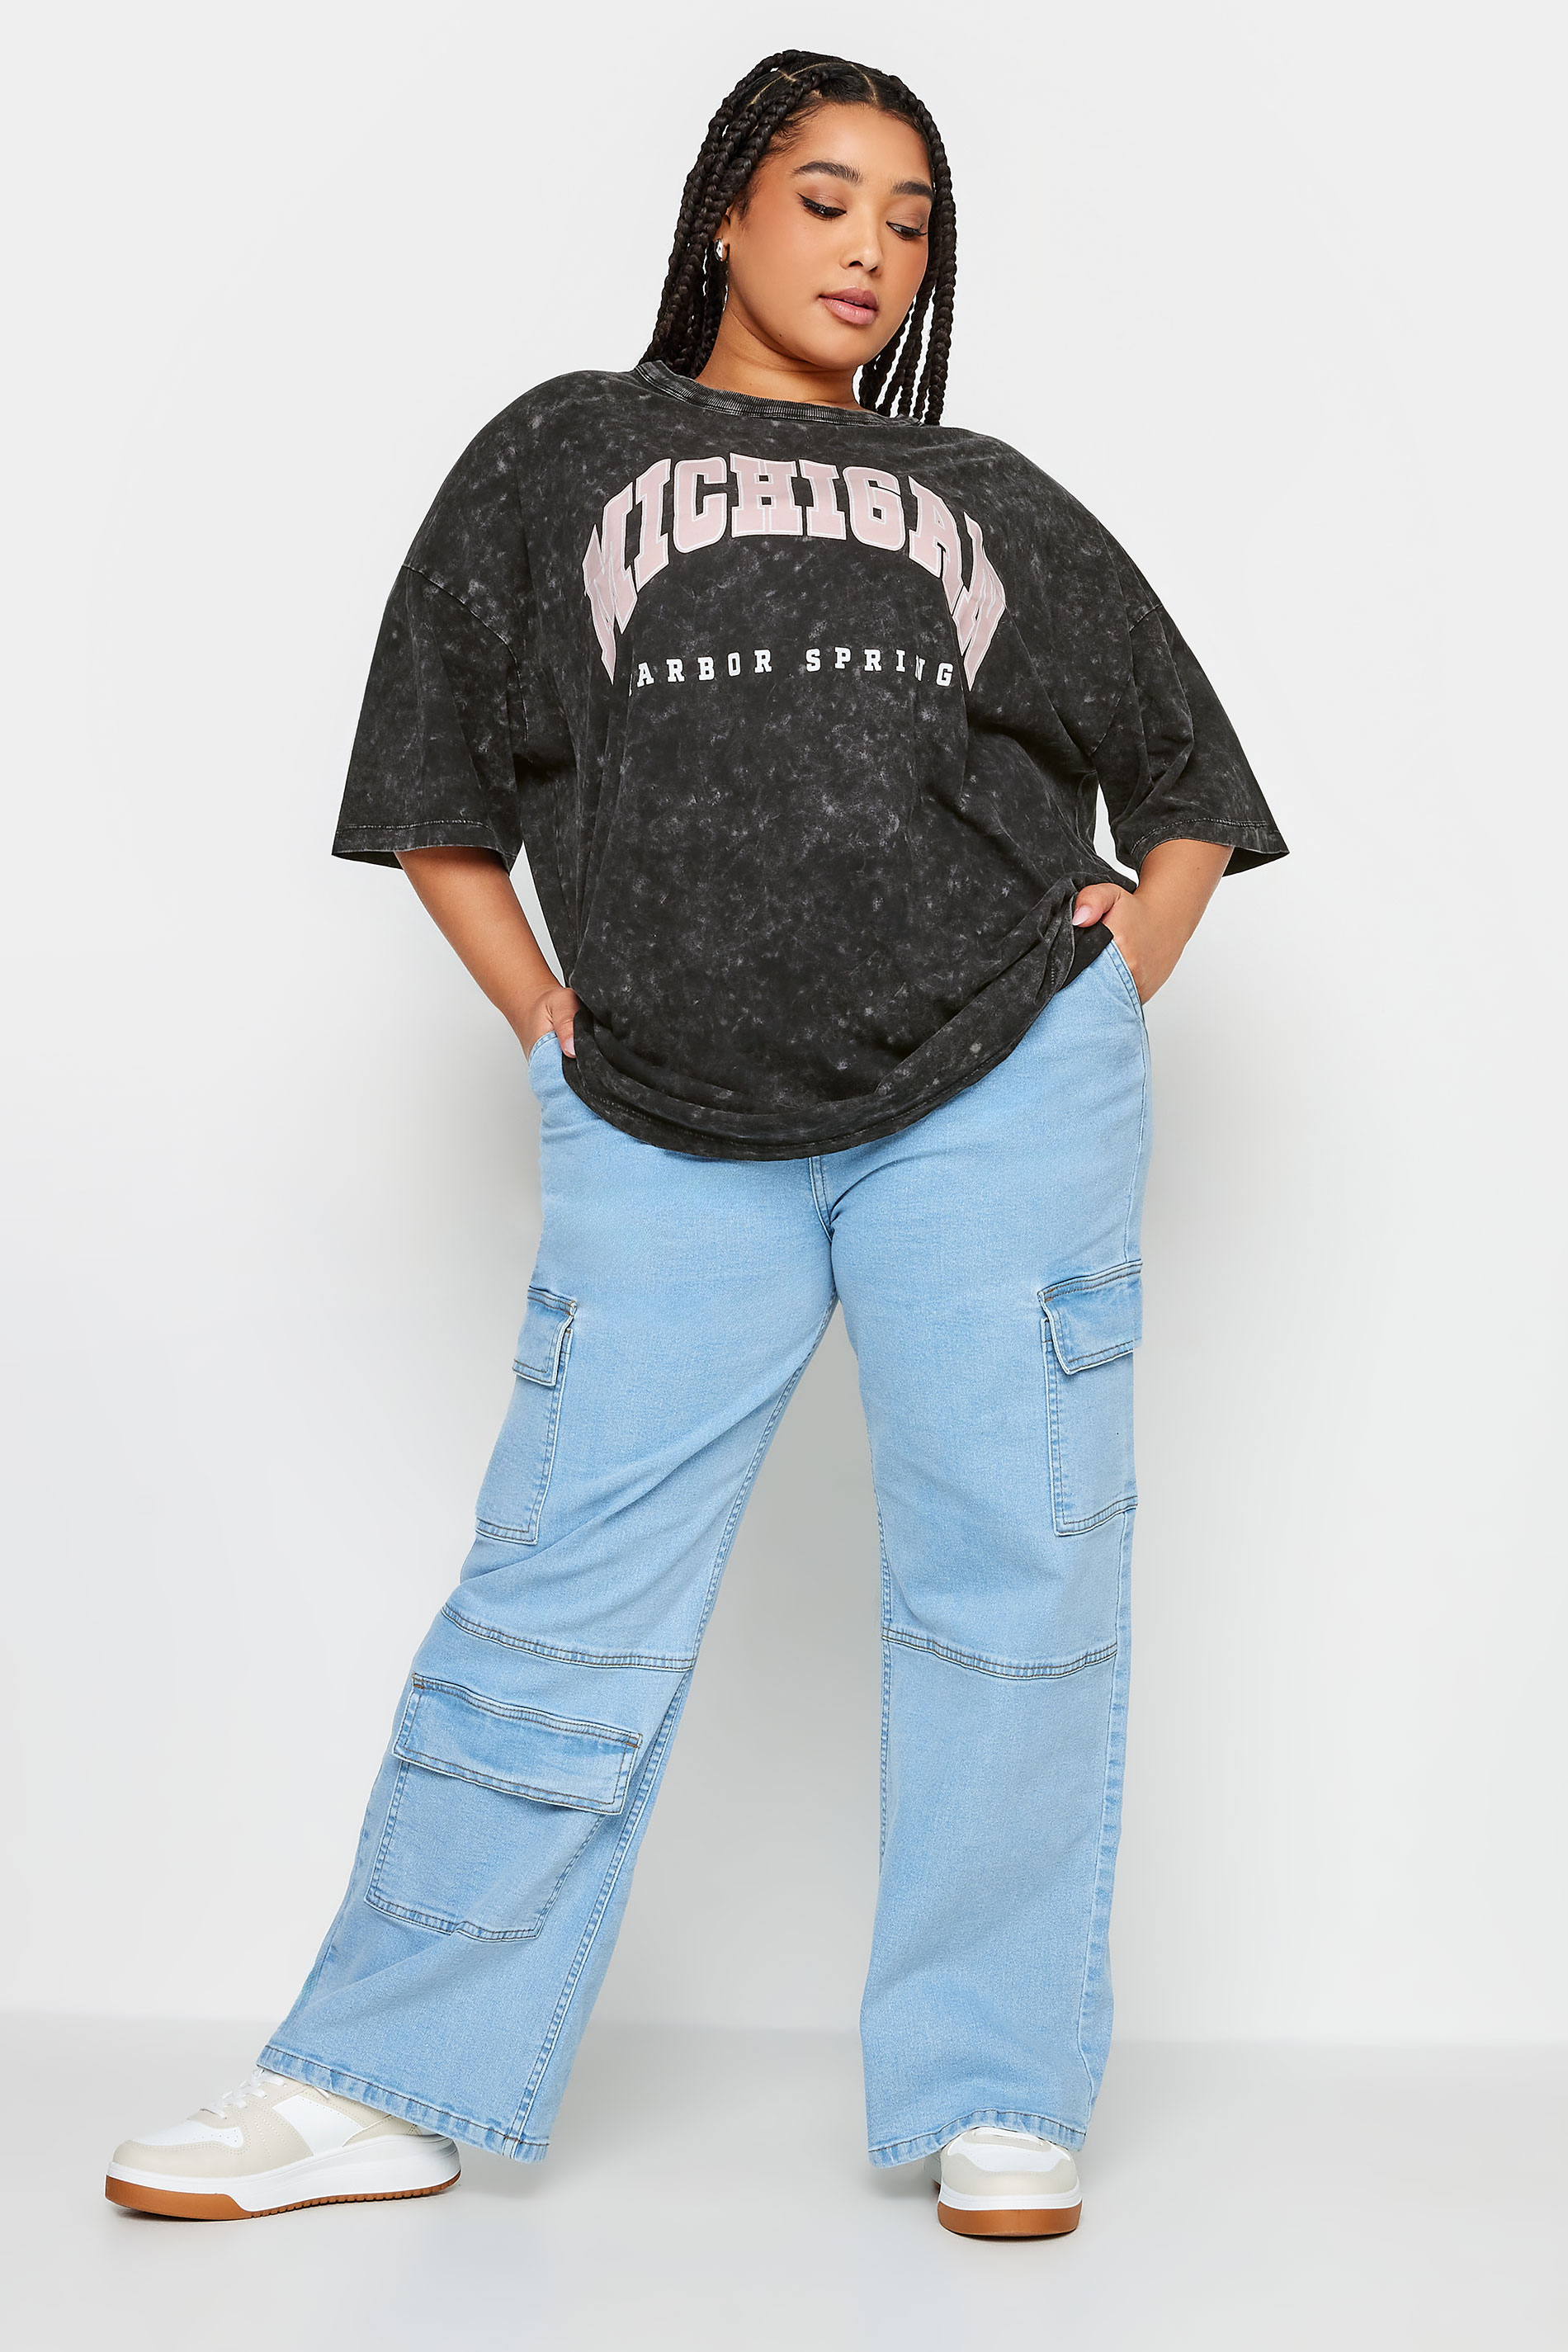 YOURS Plus Size Black 'Michigan' Slogan Acid Wash Oversized Boxy T-Shirt | Yours Clothing  2